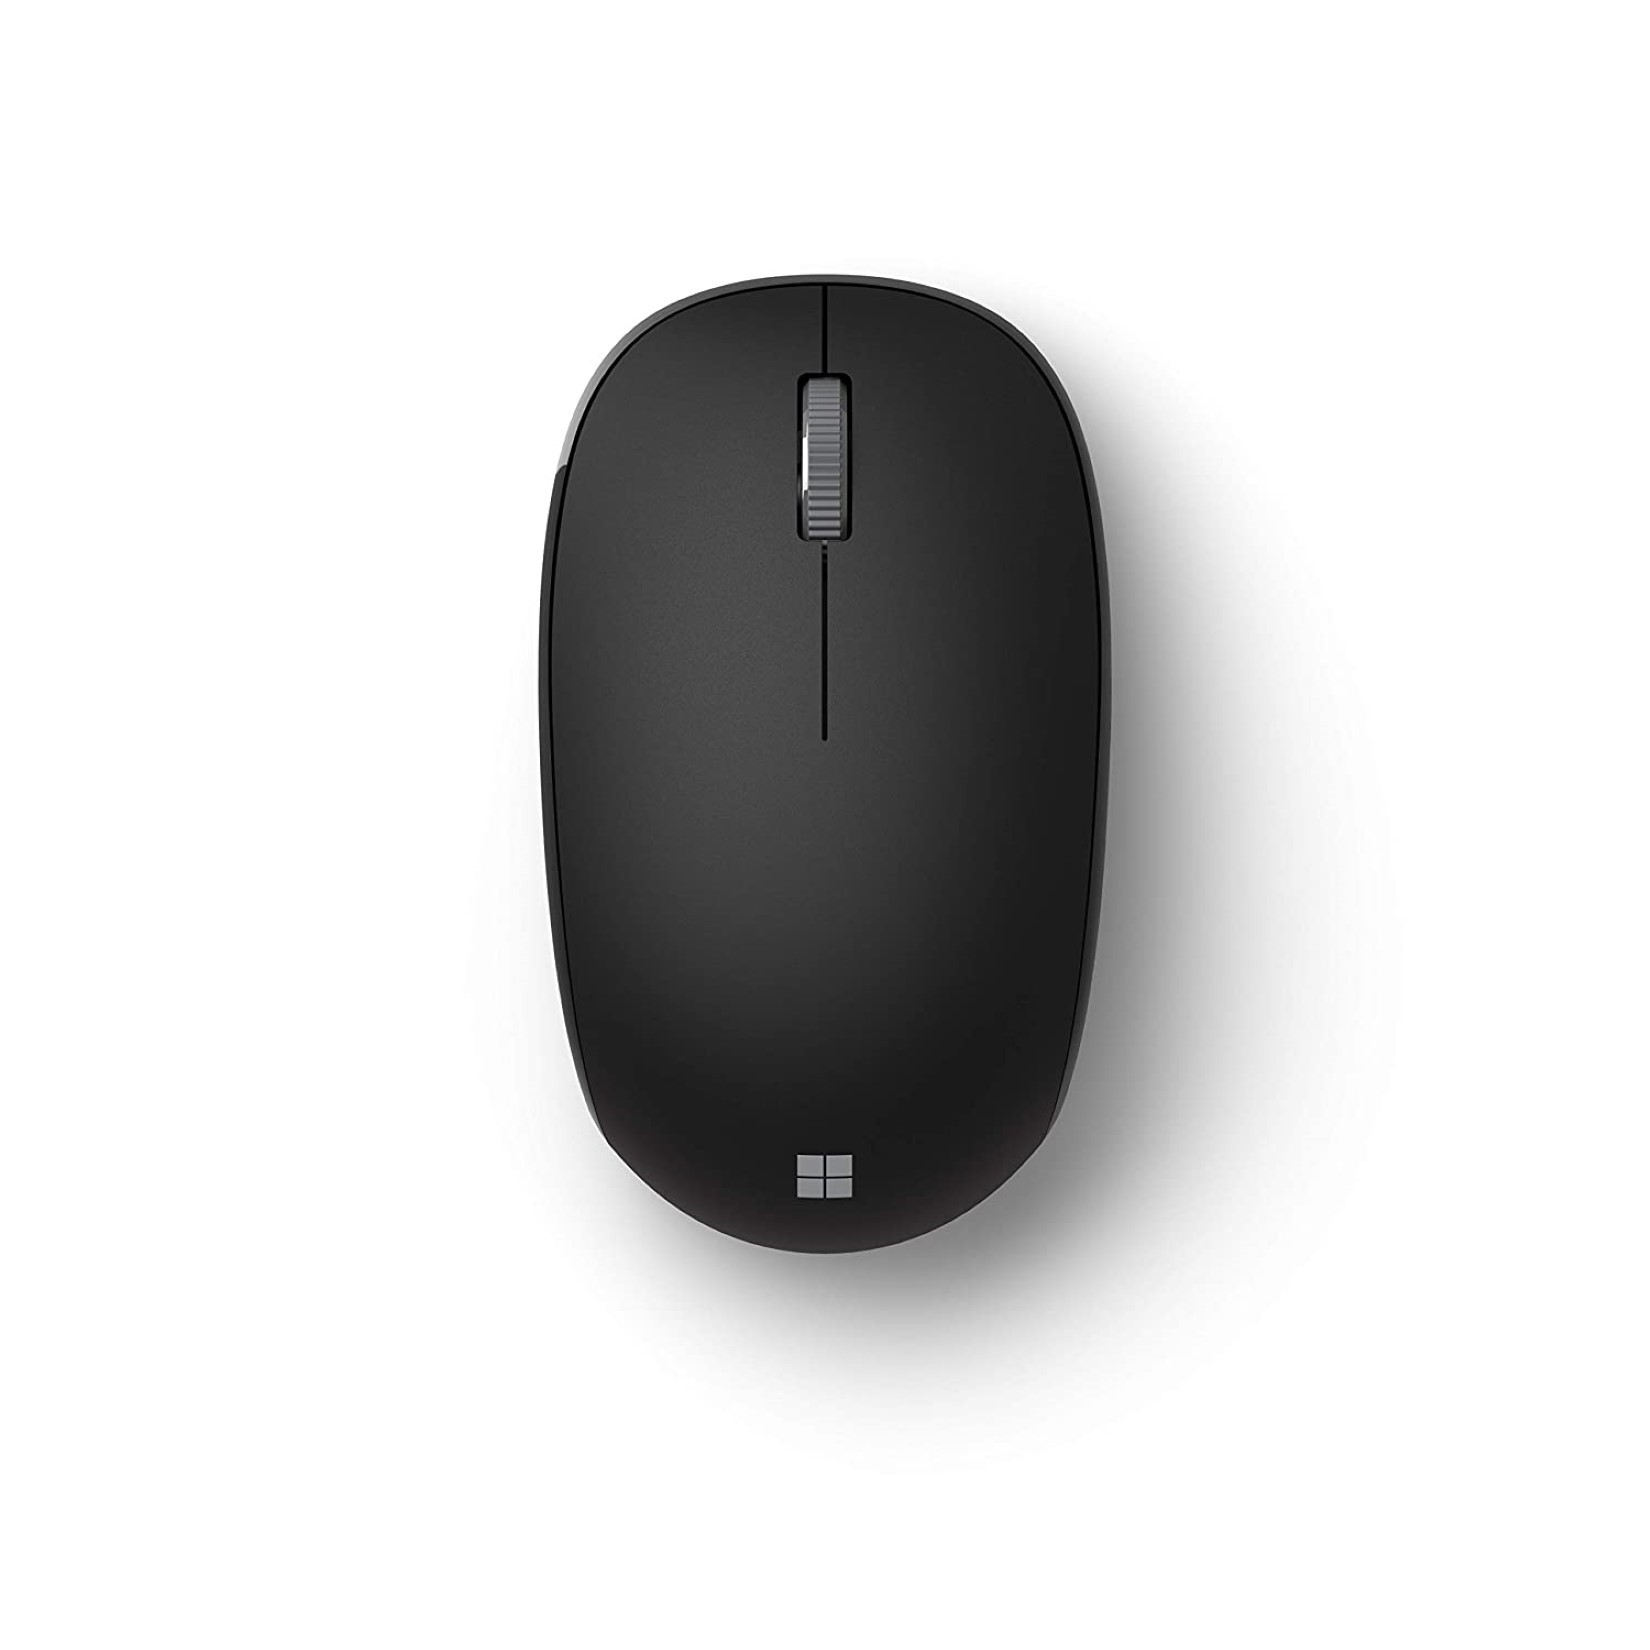 Chuột không dây Microsoft Bluetooth Mouse RJN-00005 có thiết kế đẹp và đơn giản